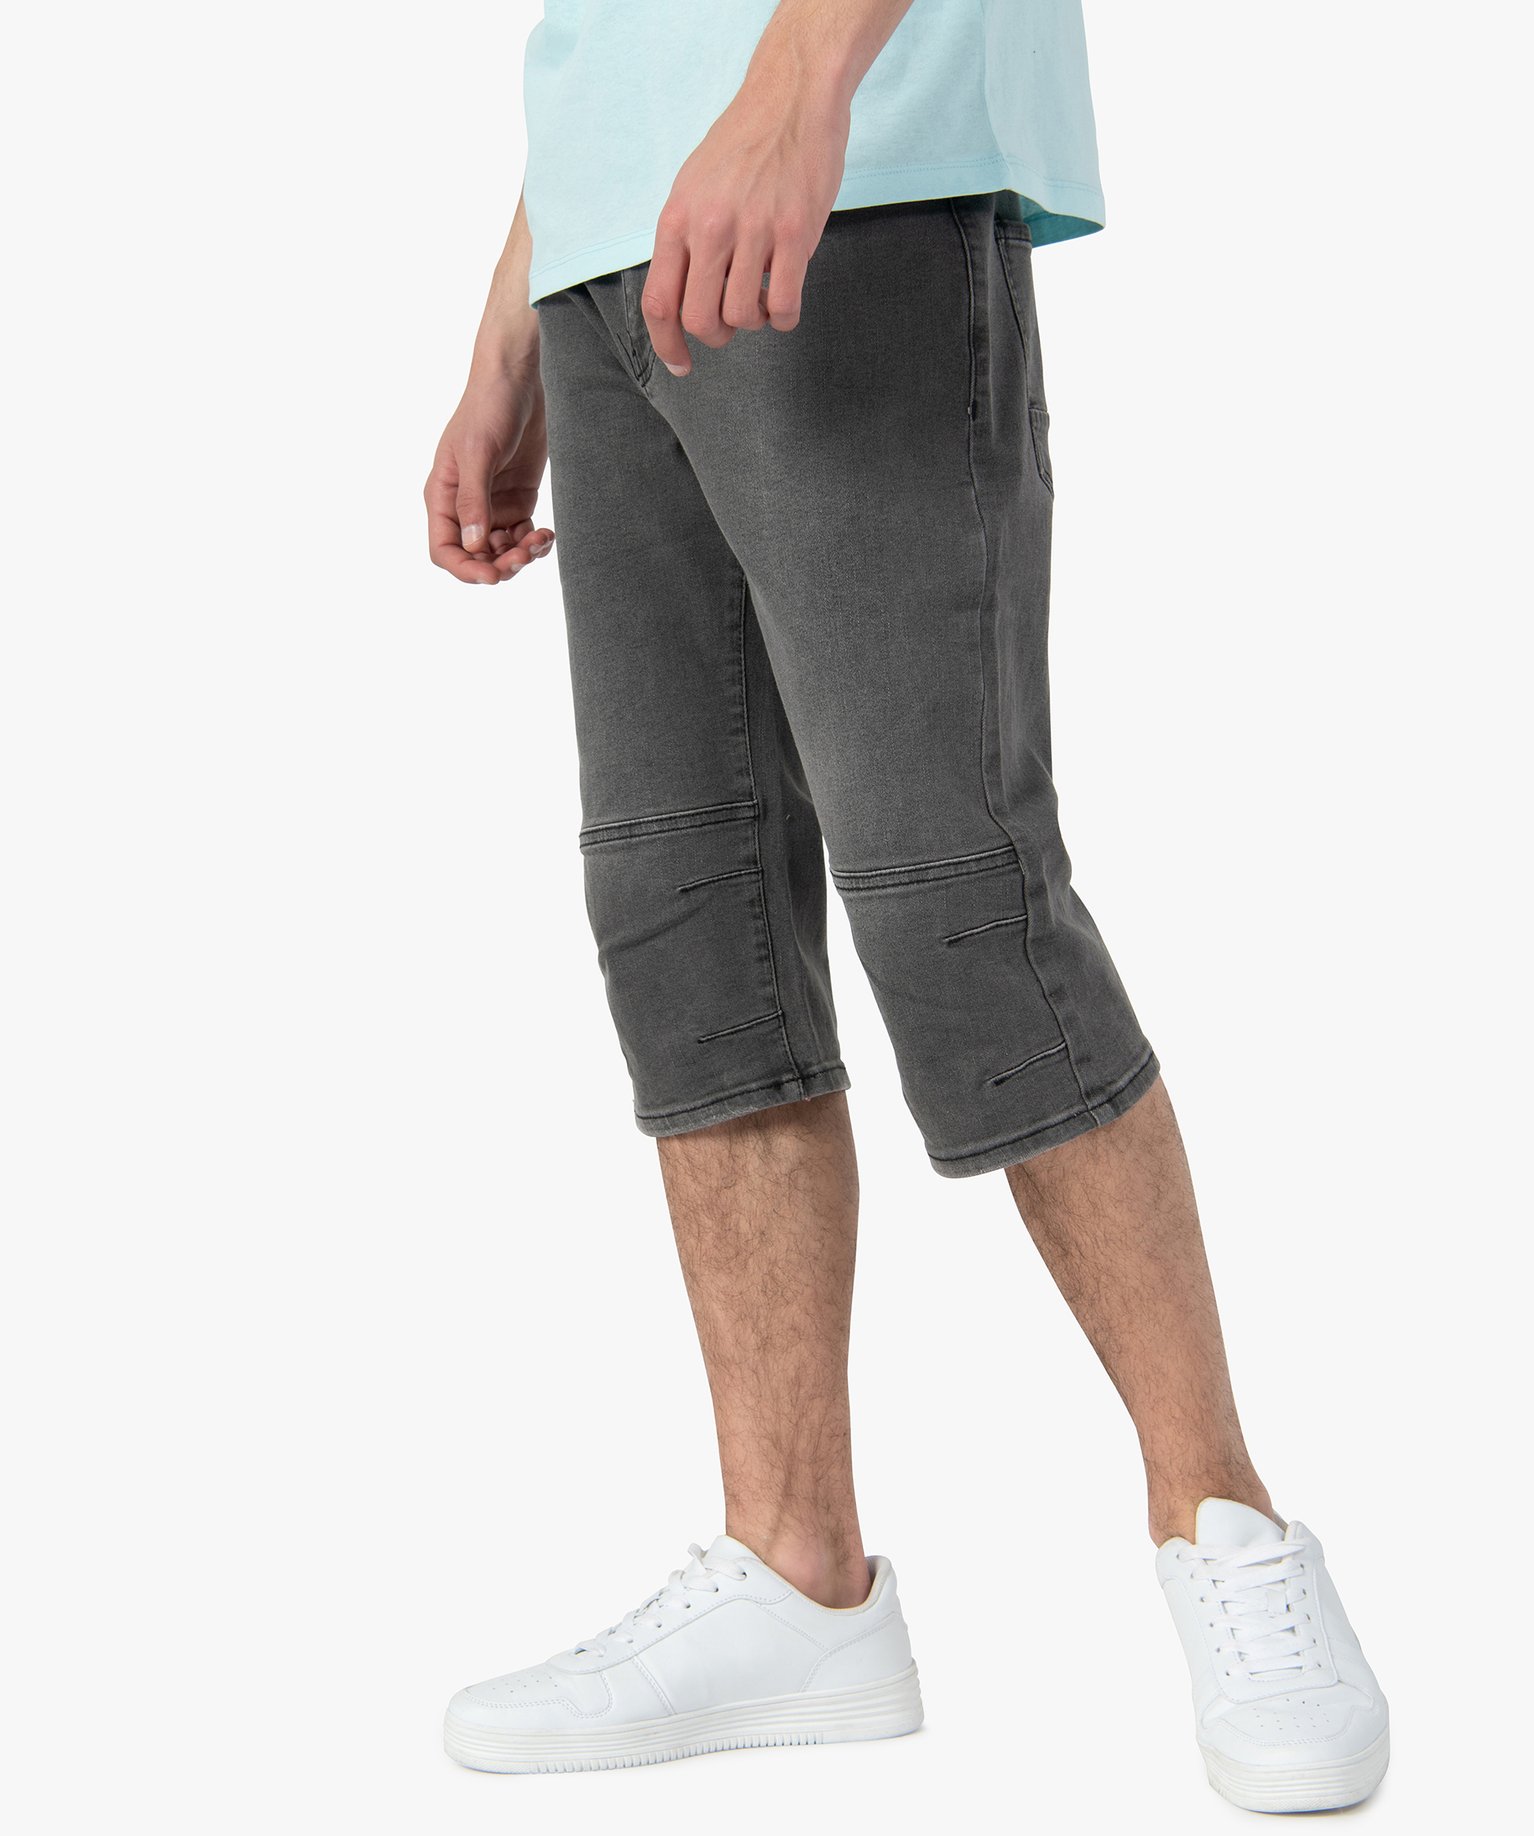 bermuda homme en jean legerement delave gris